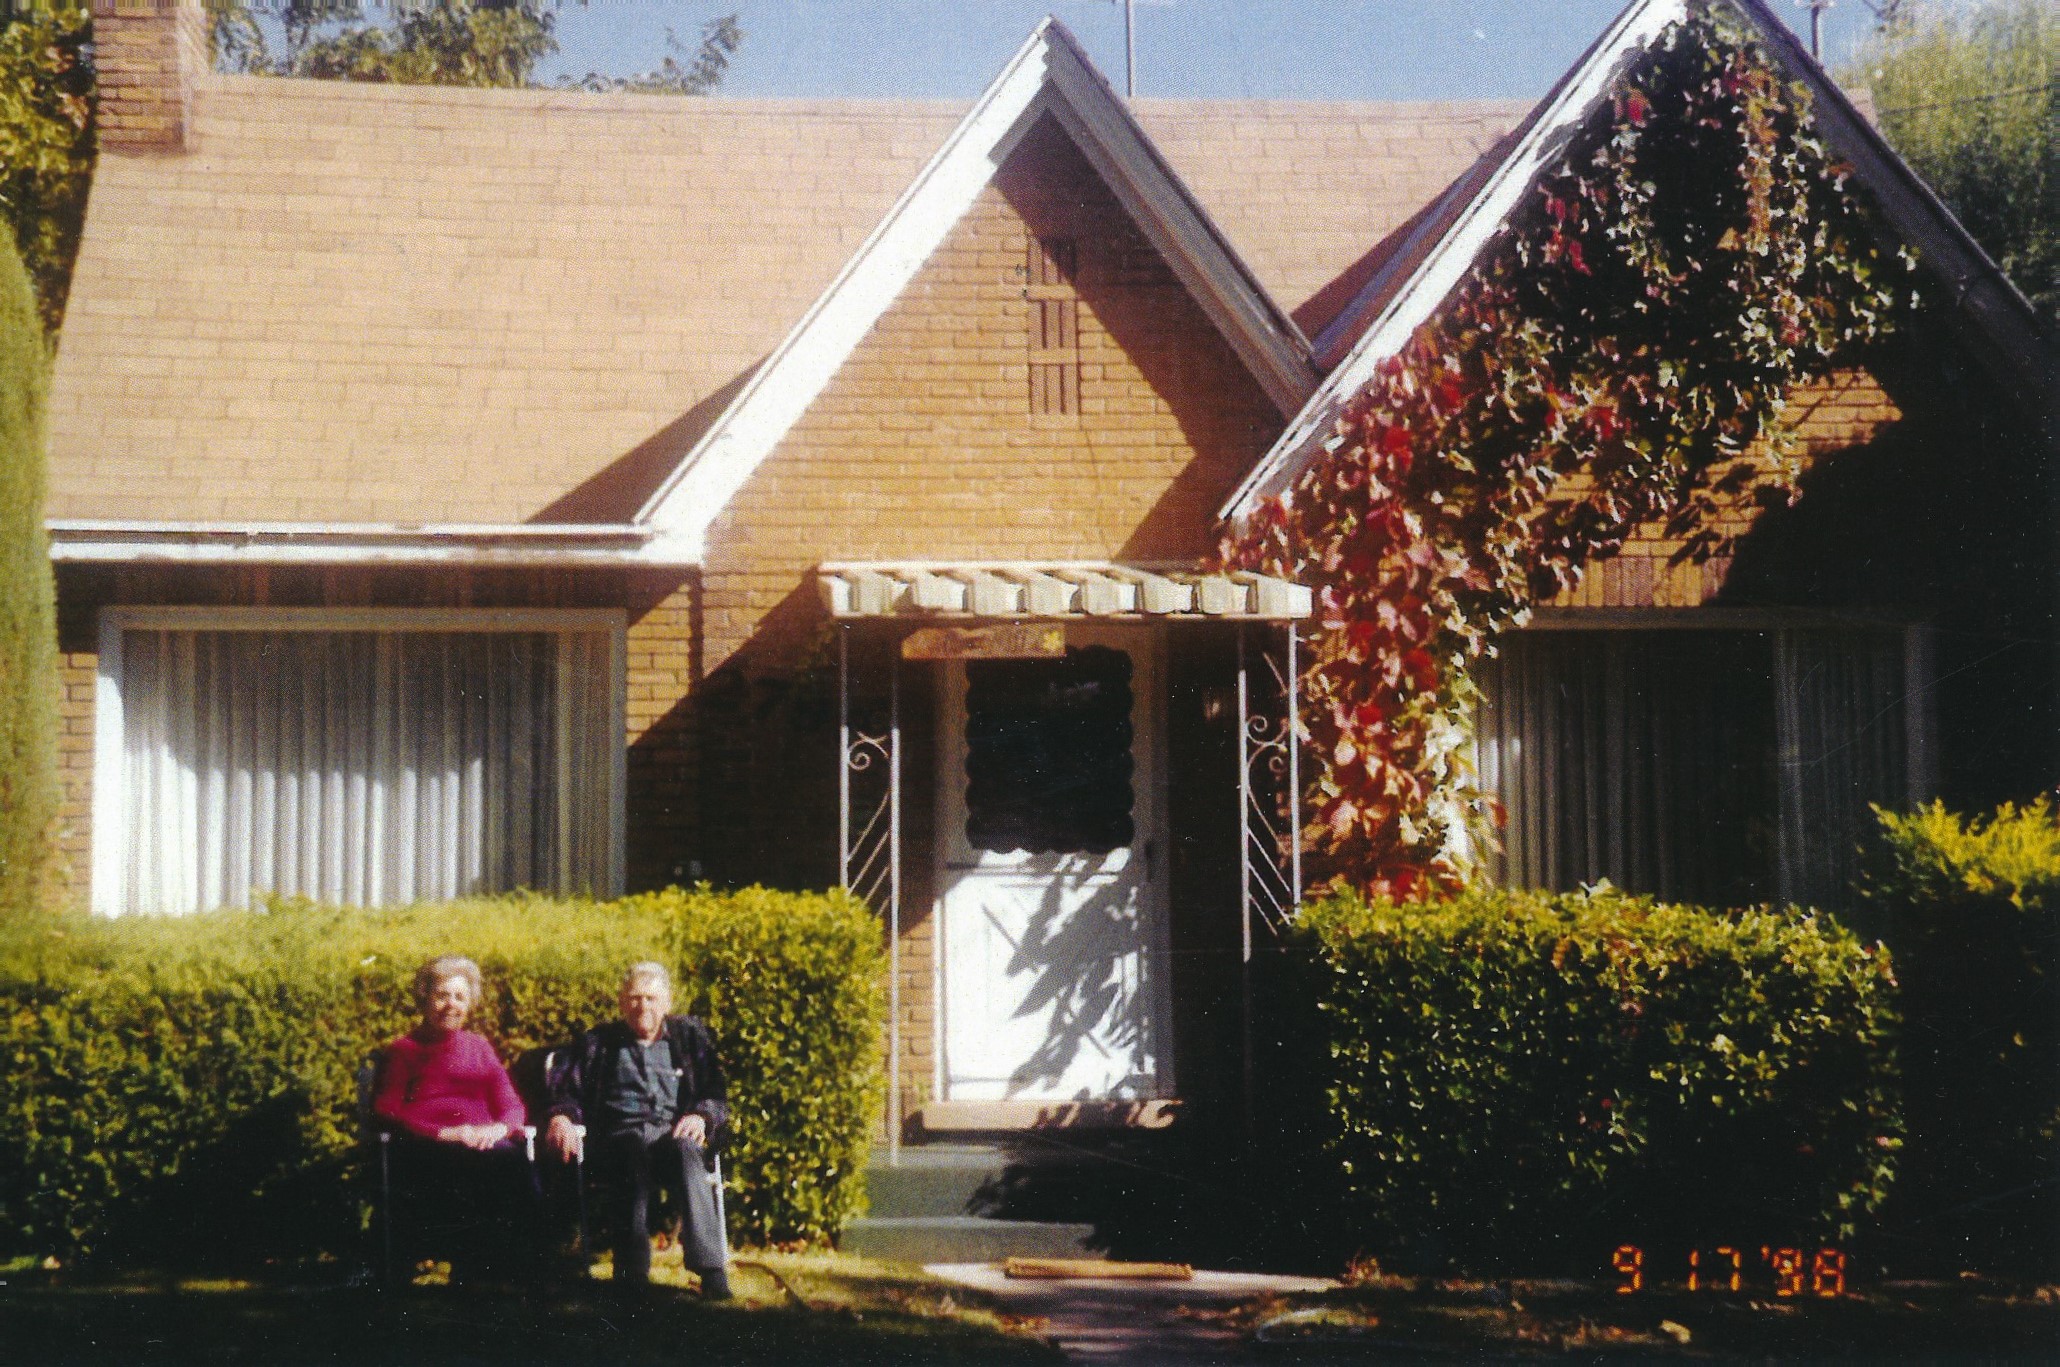 Elgin & Vivian Graff in front of their Santa Clara home